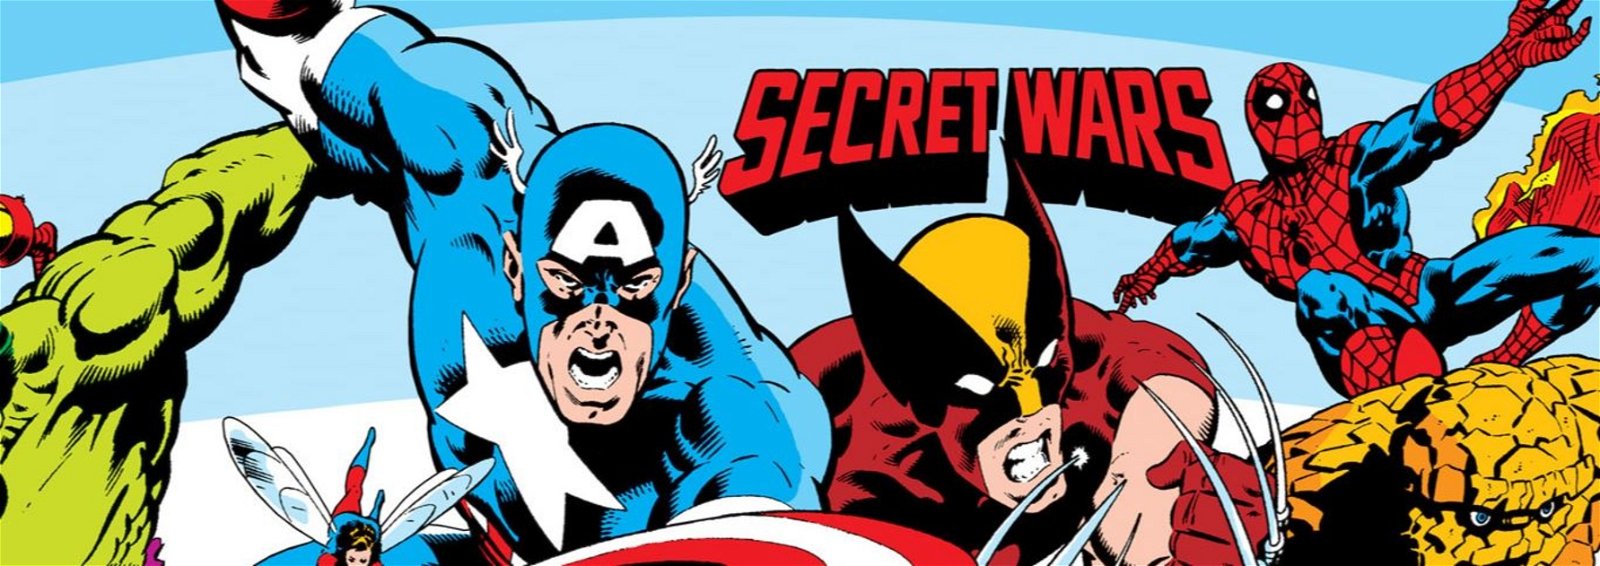 Marvel Super Heroes: Secret Wars